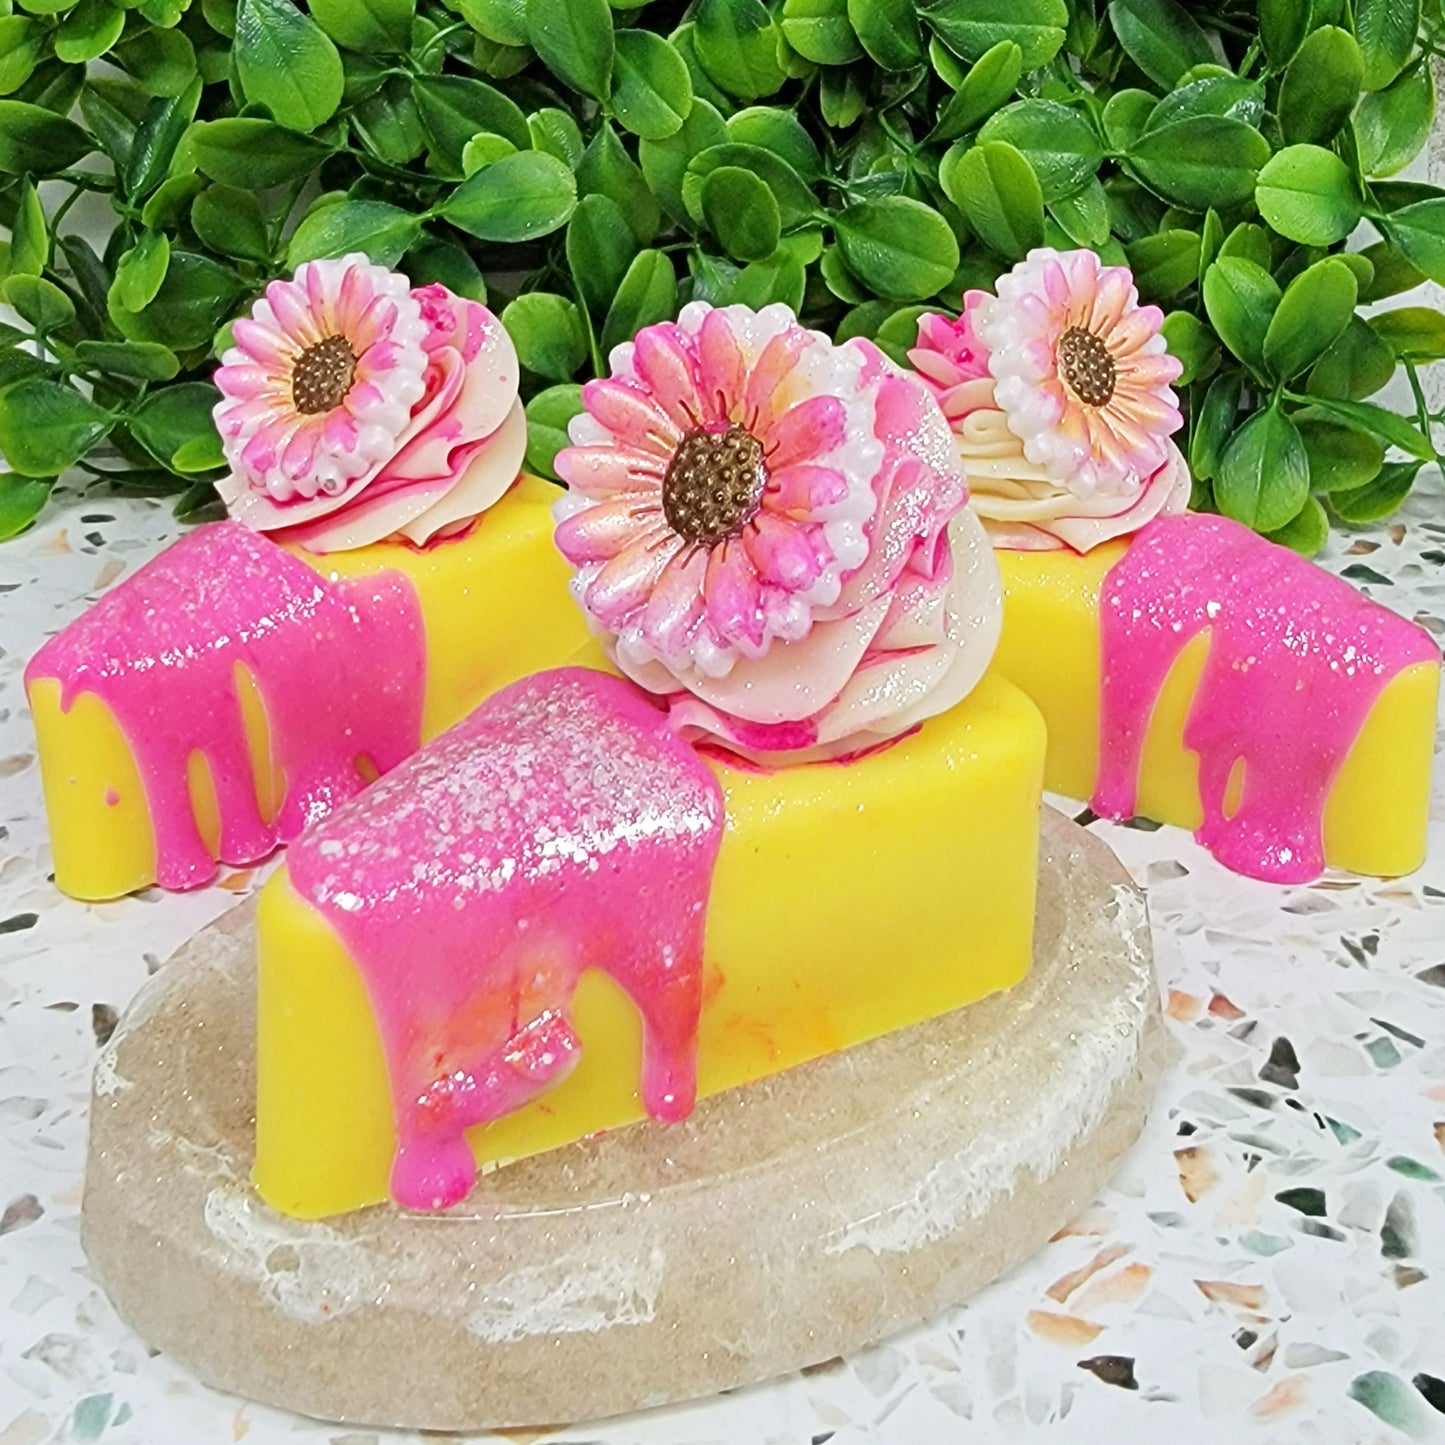 Daisy Cakes Artisan Soap Cake Slice